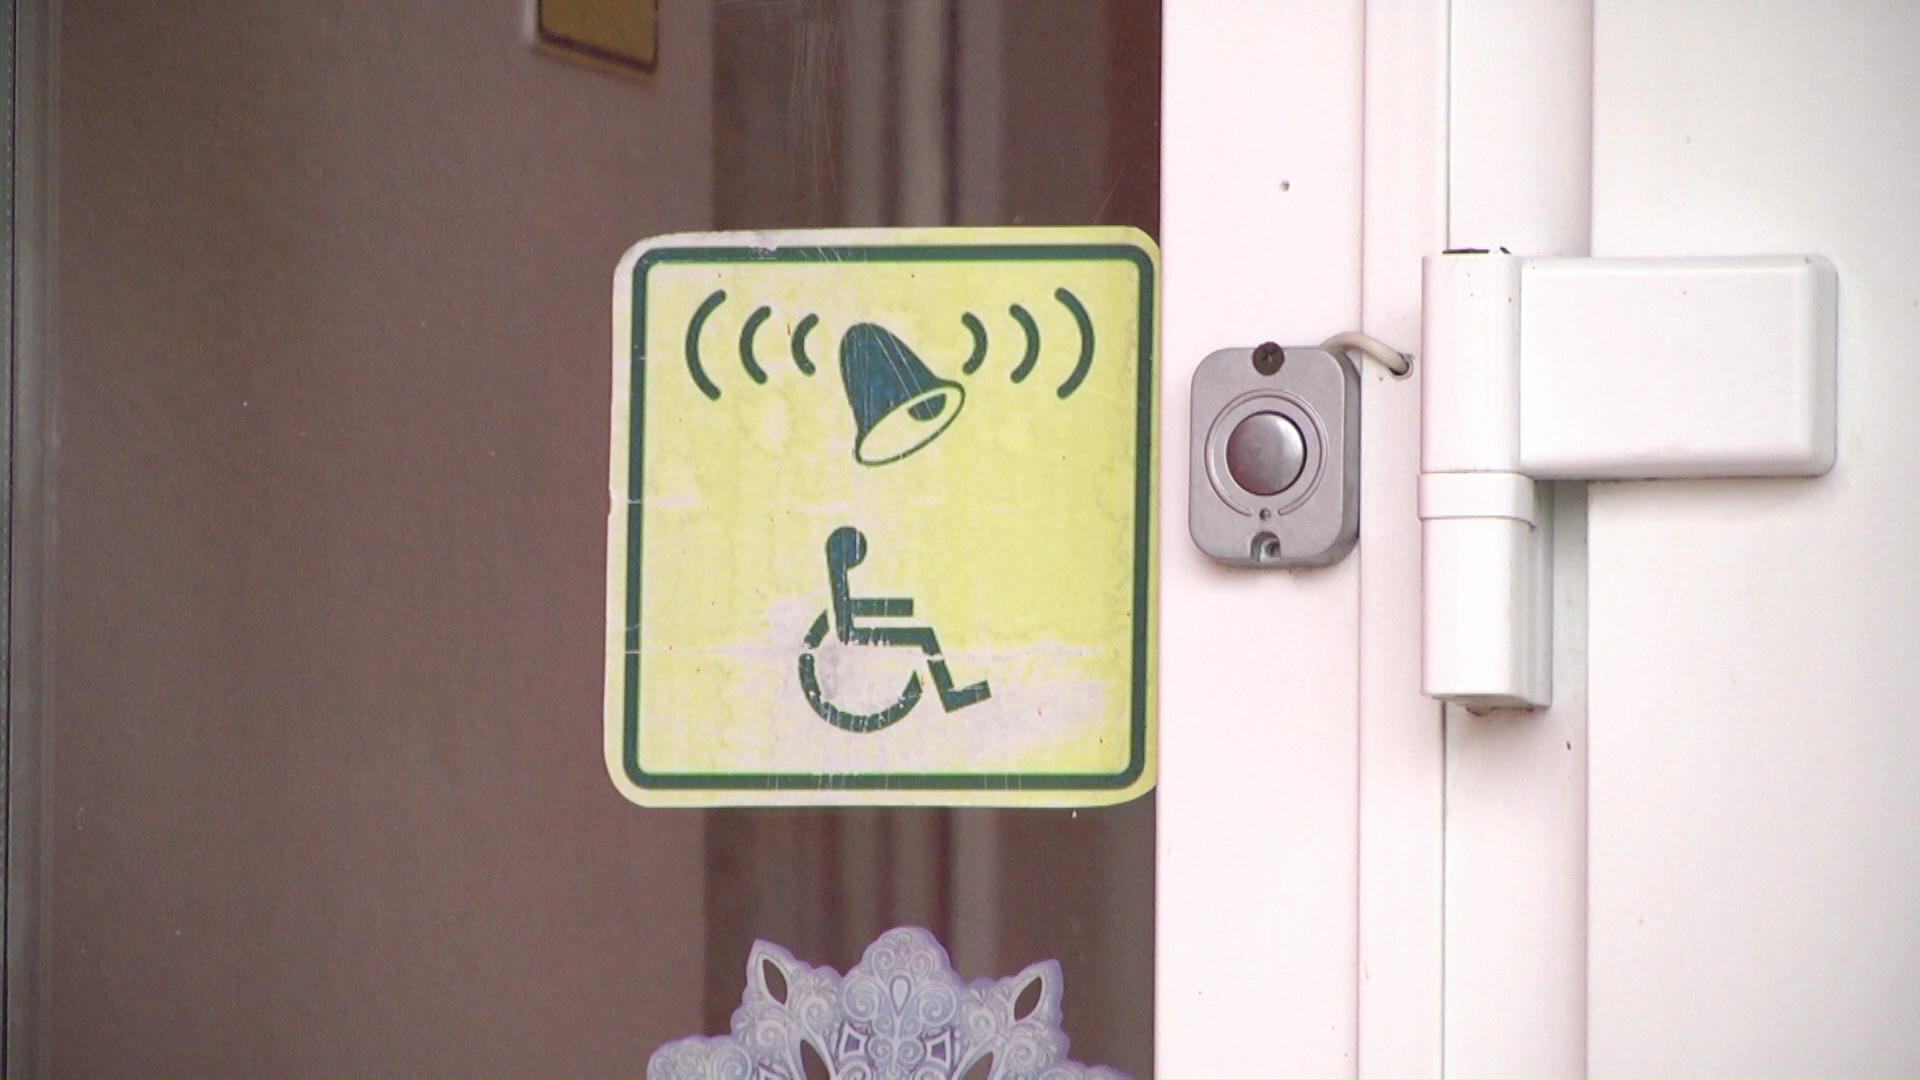 кнопка вызова для удобства инвалидов